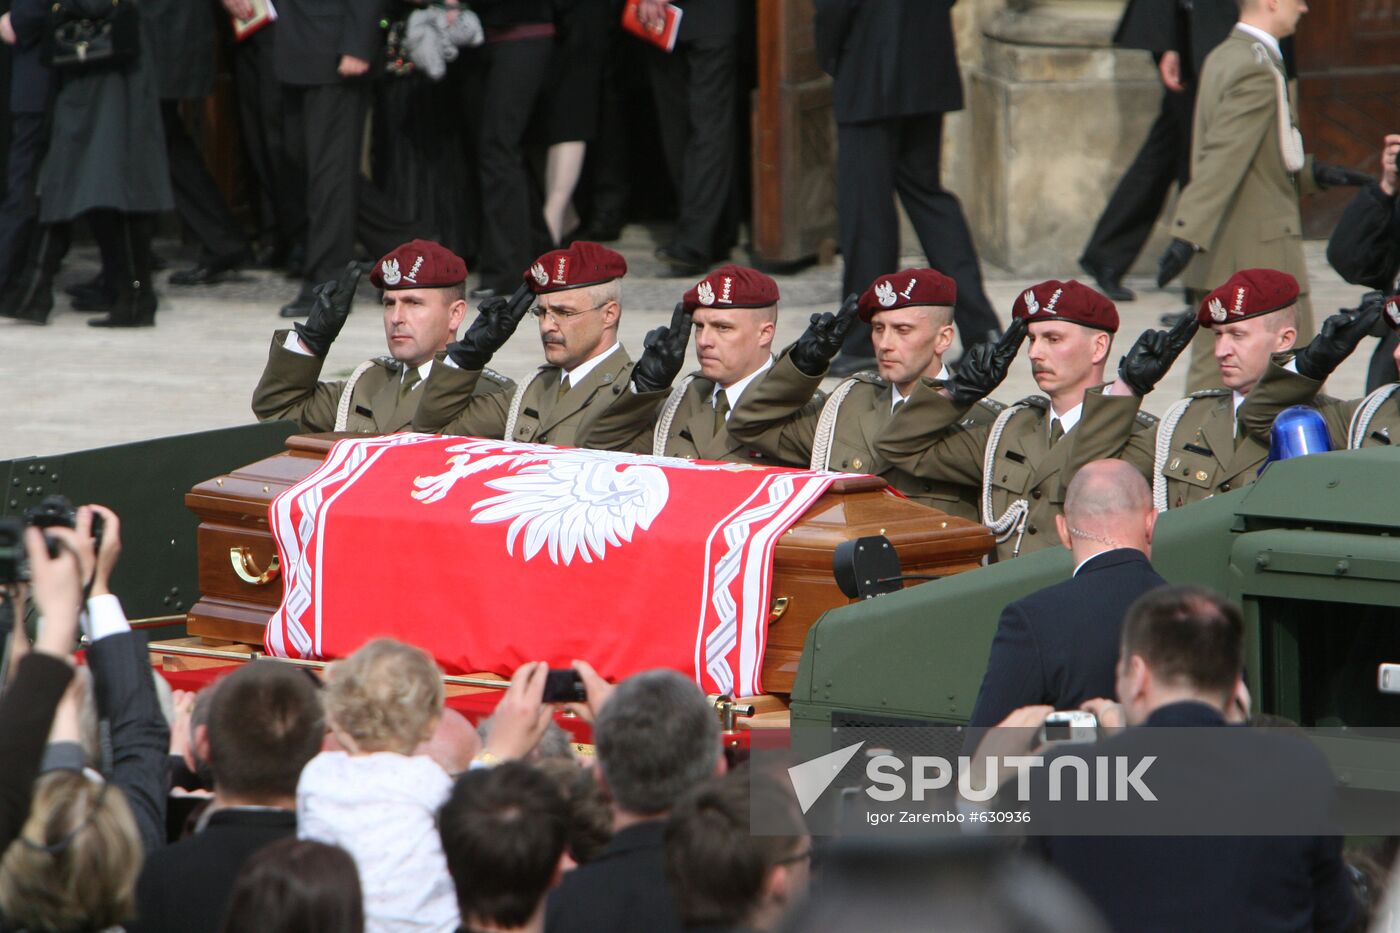 Funeral of Polish President held in Krakow